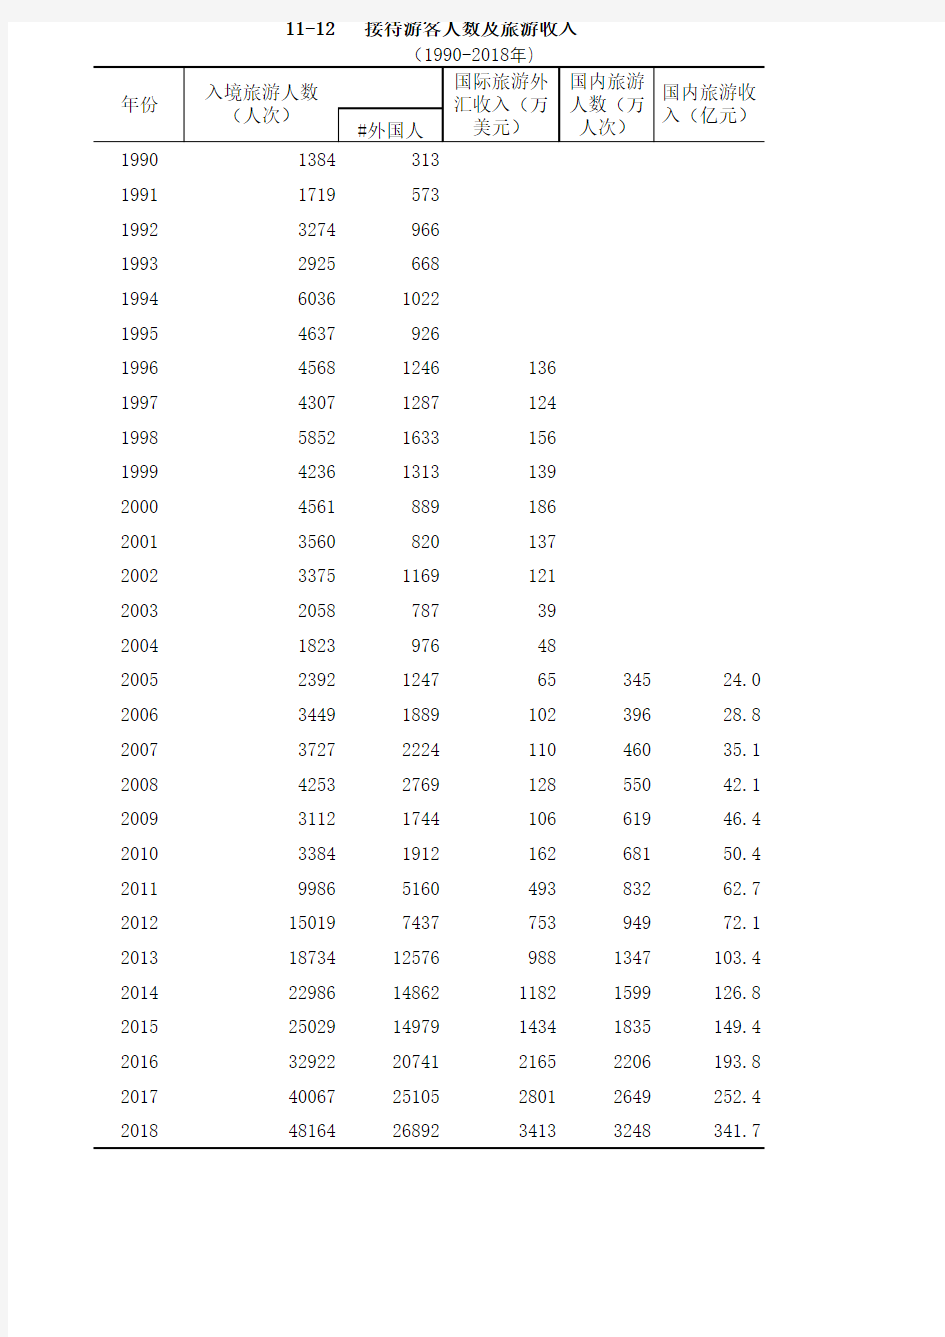 福建省宁德市统计年鉴社会经济发展指标数据：11-12接待游客人数及旅游收入